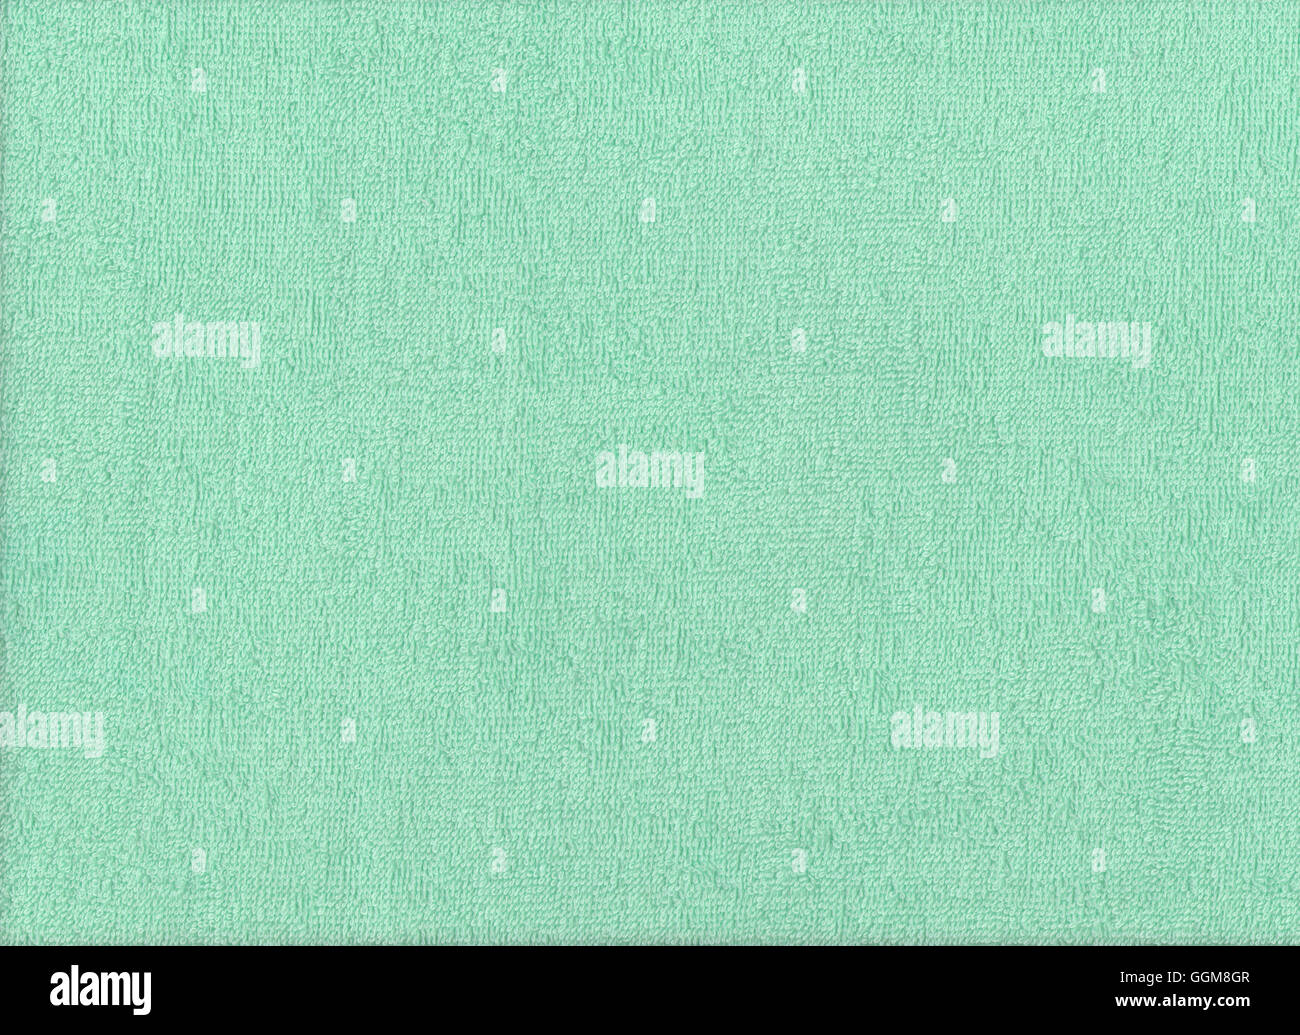 La texture de tissu vert clair design textile pour un motif de fond. Banque D'Images